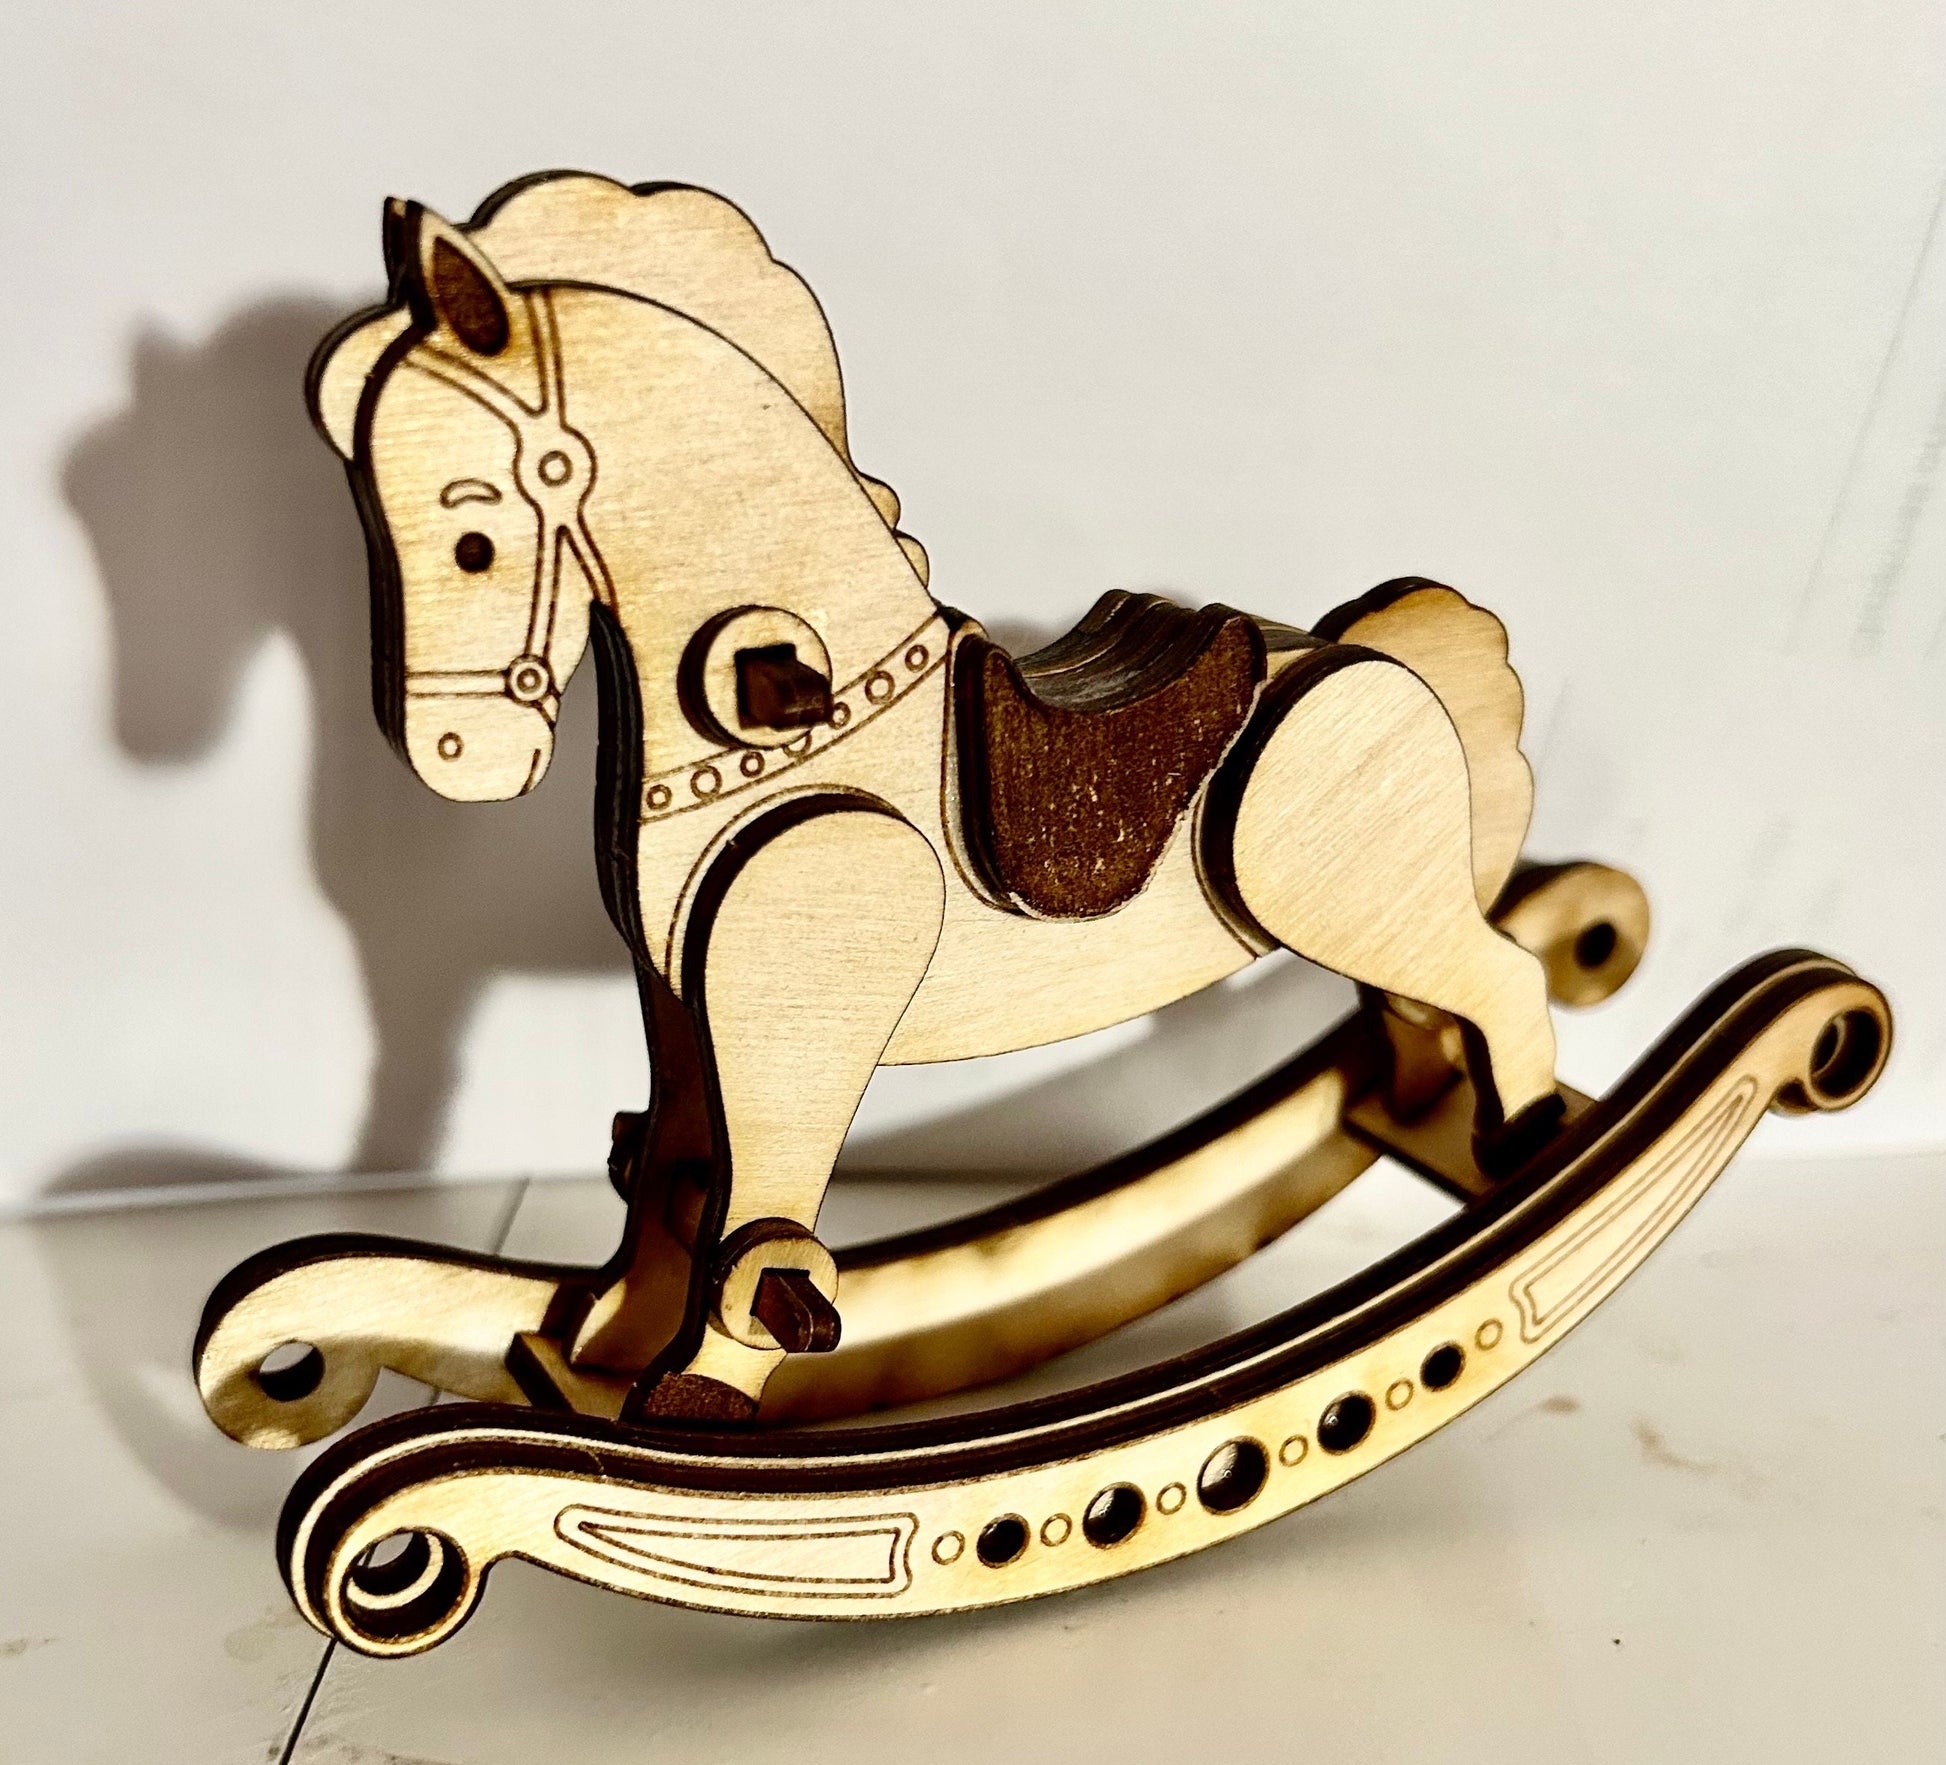 Toy rocking horse DIY